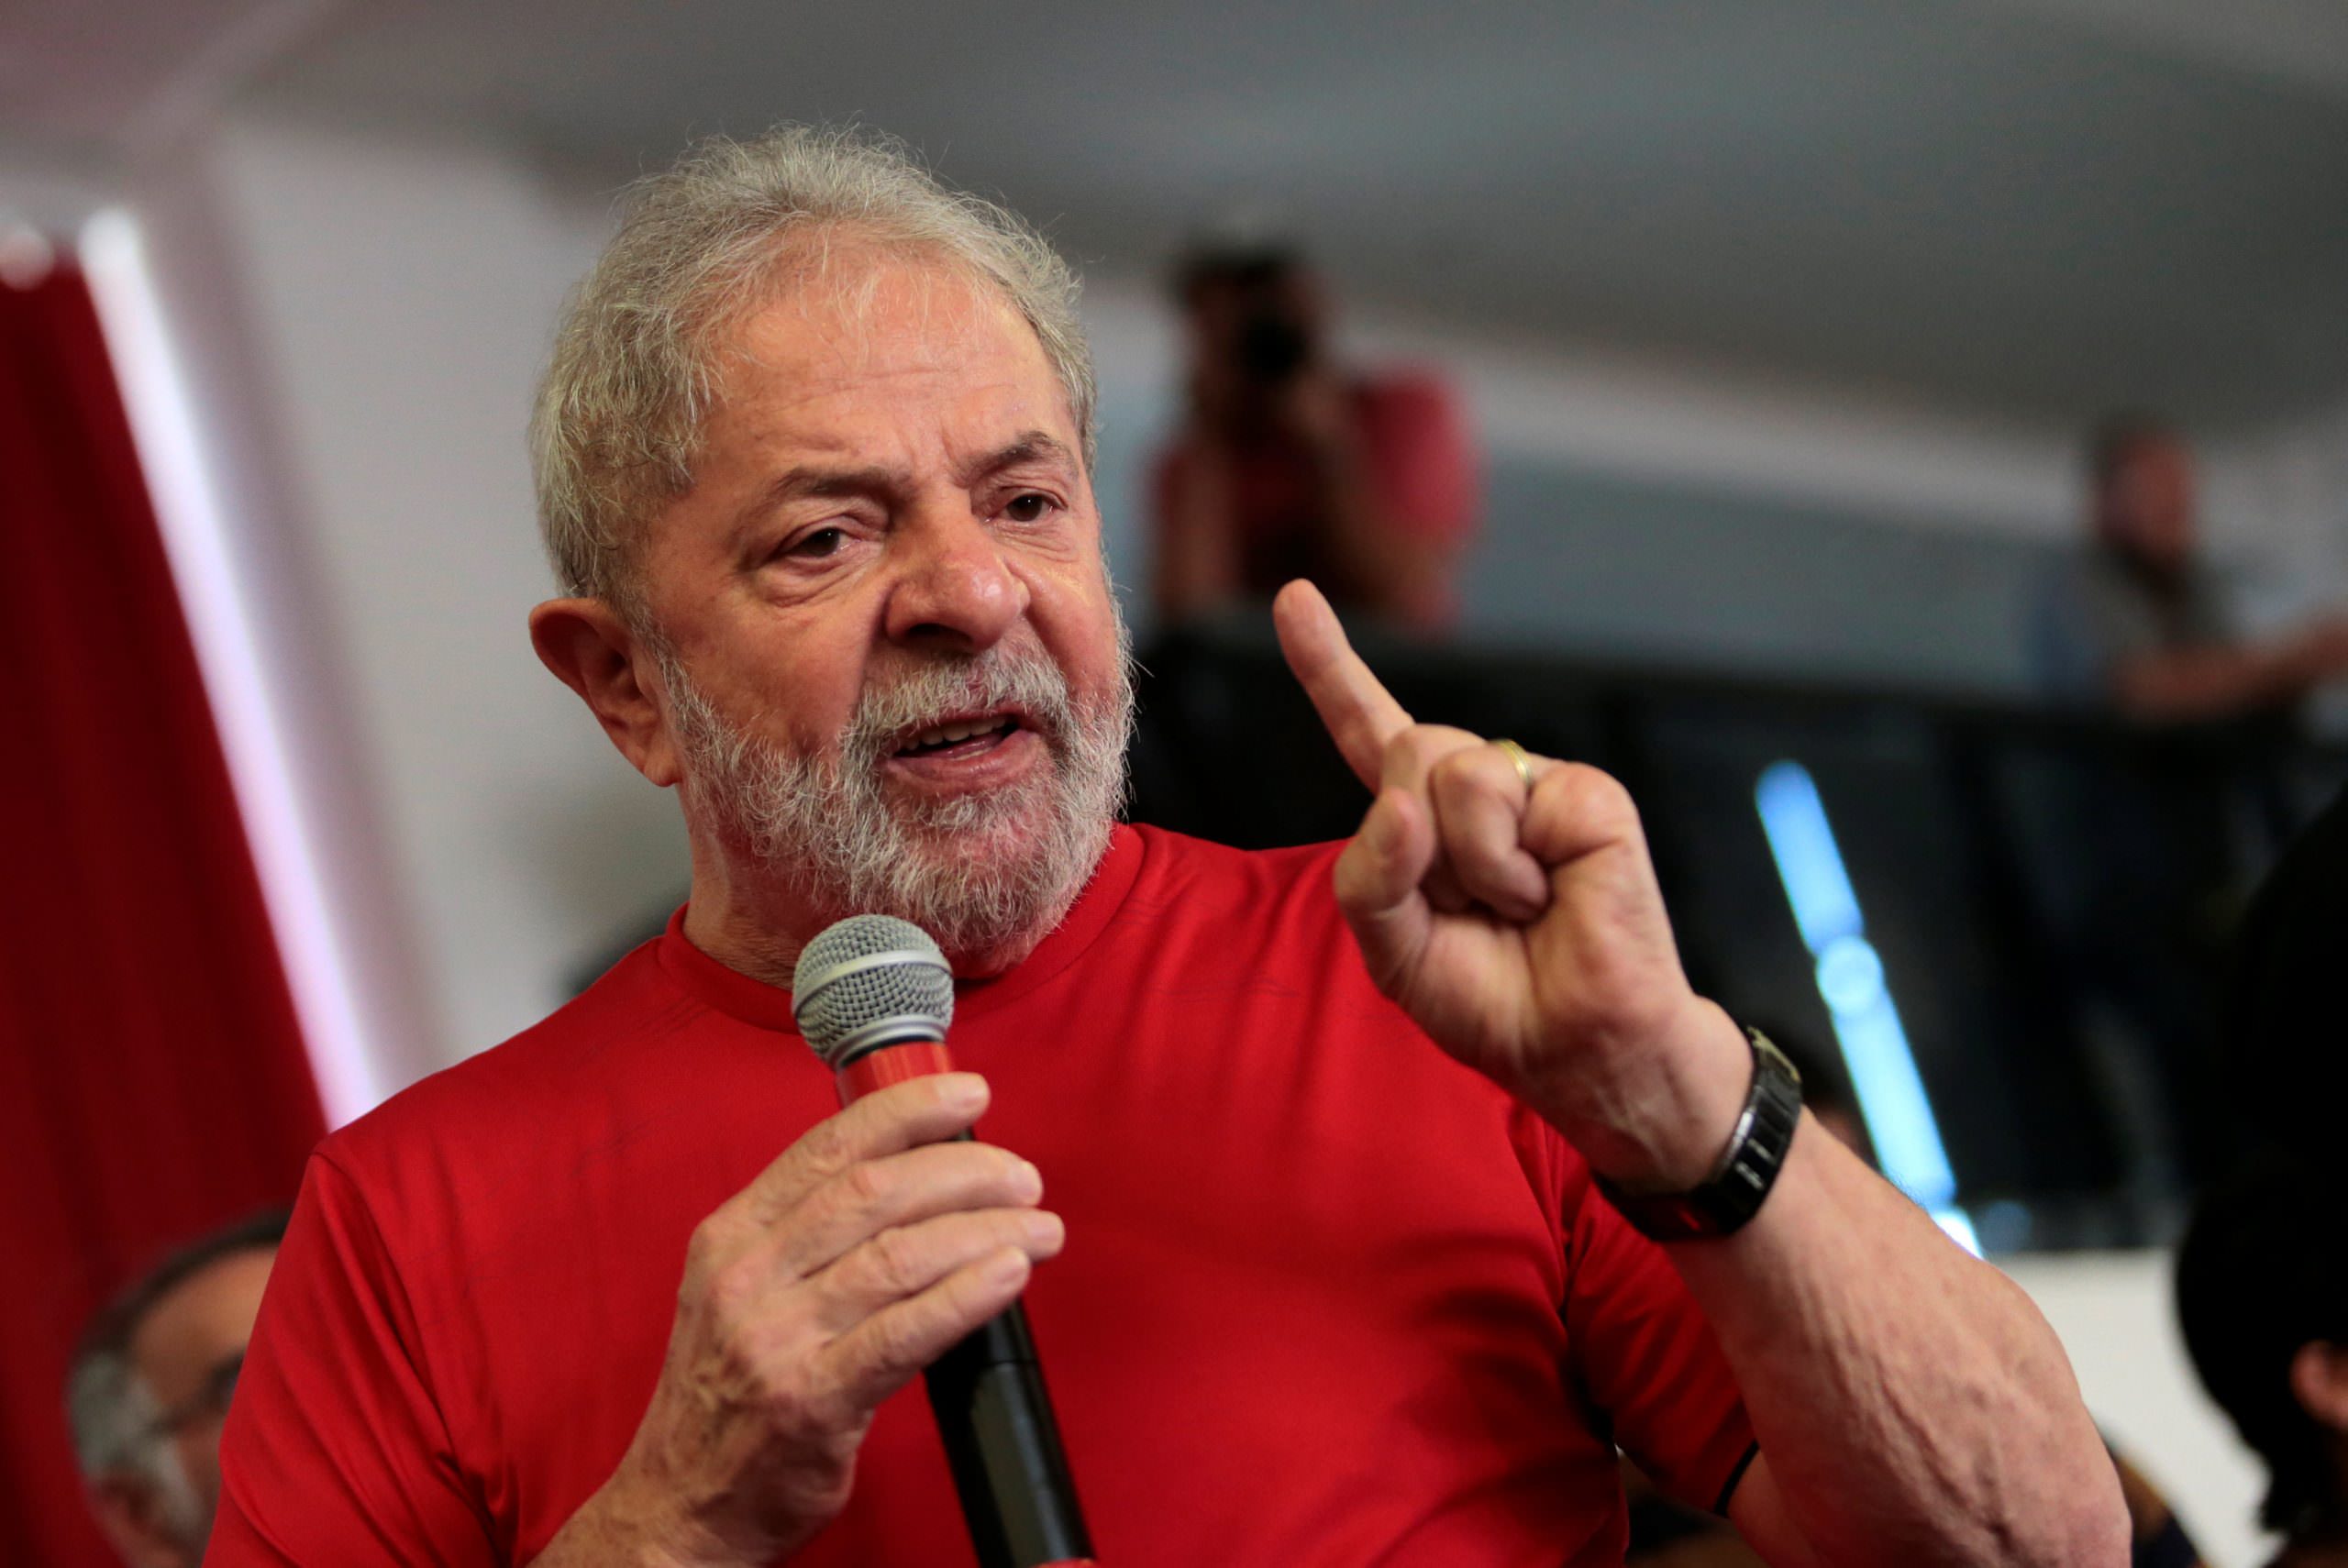 Lula vai usar criação do juiz de garantias em ação na ONU contra Sergio Moro